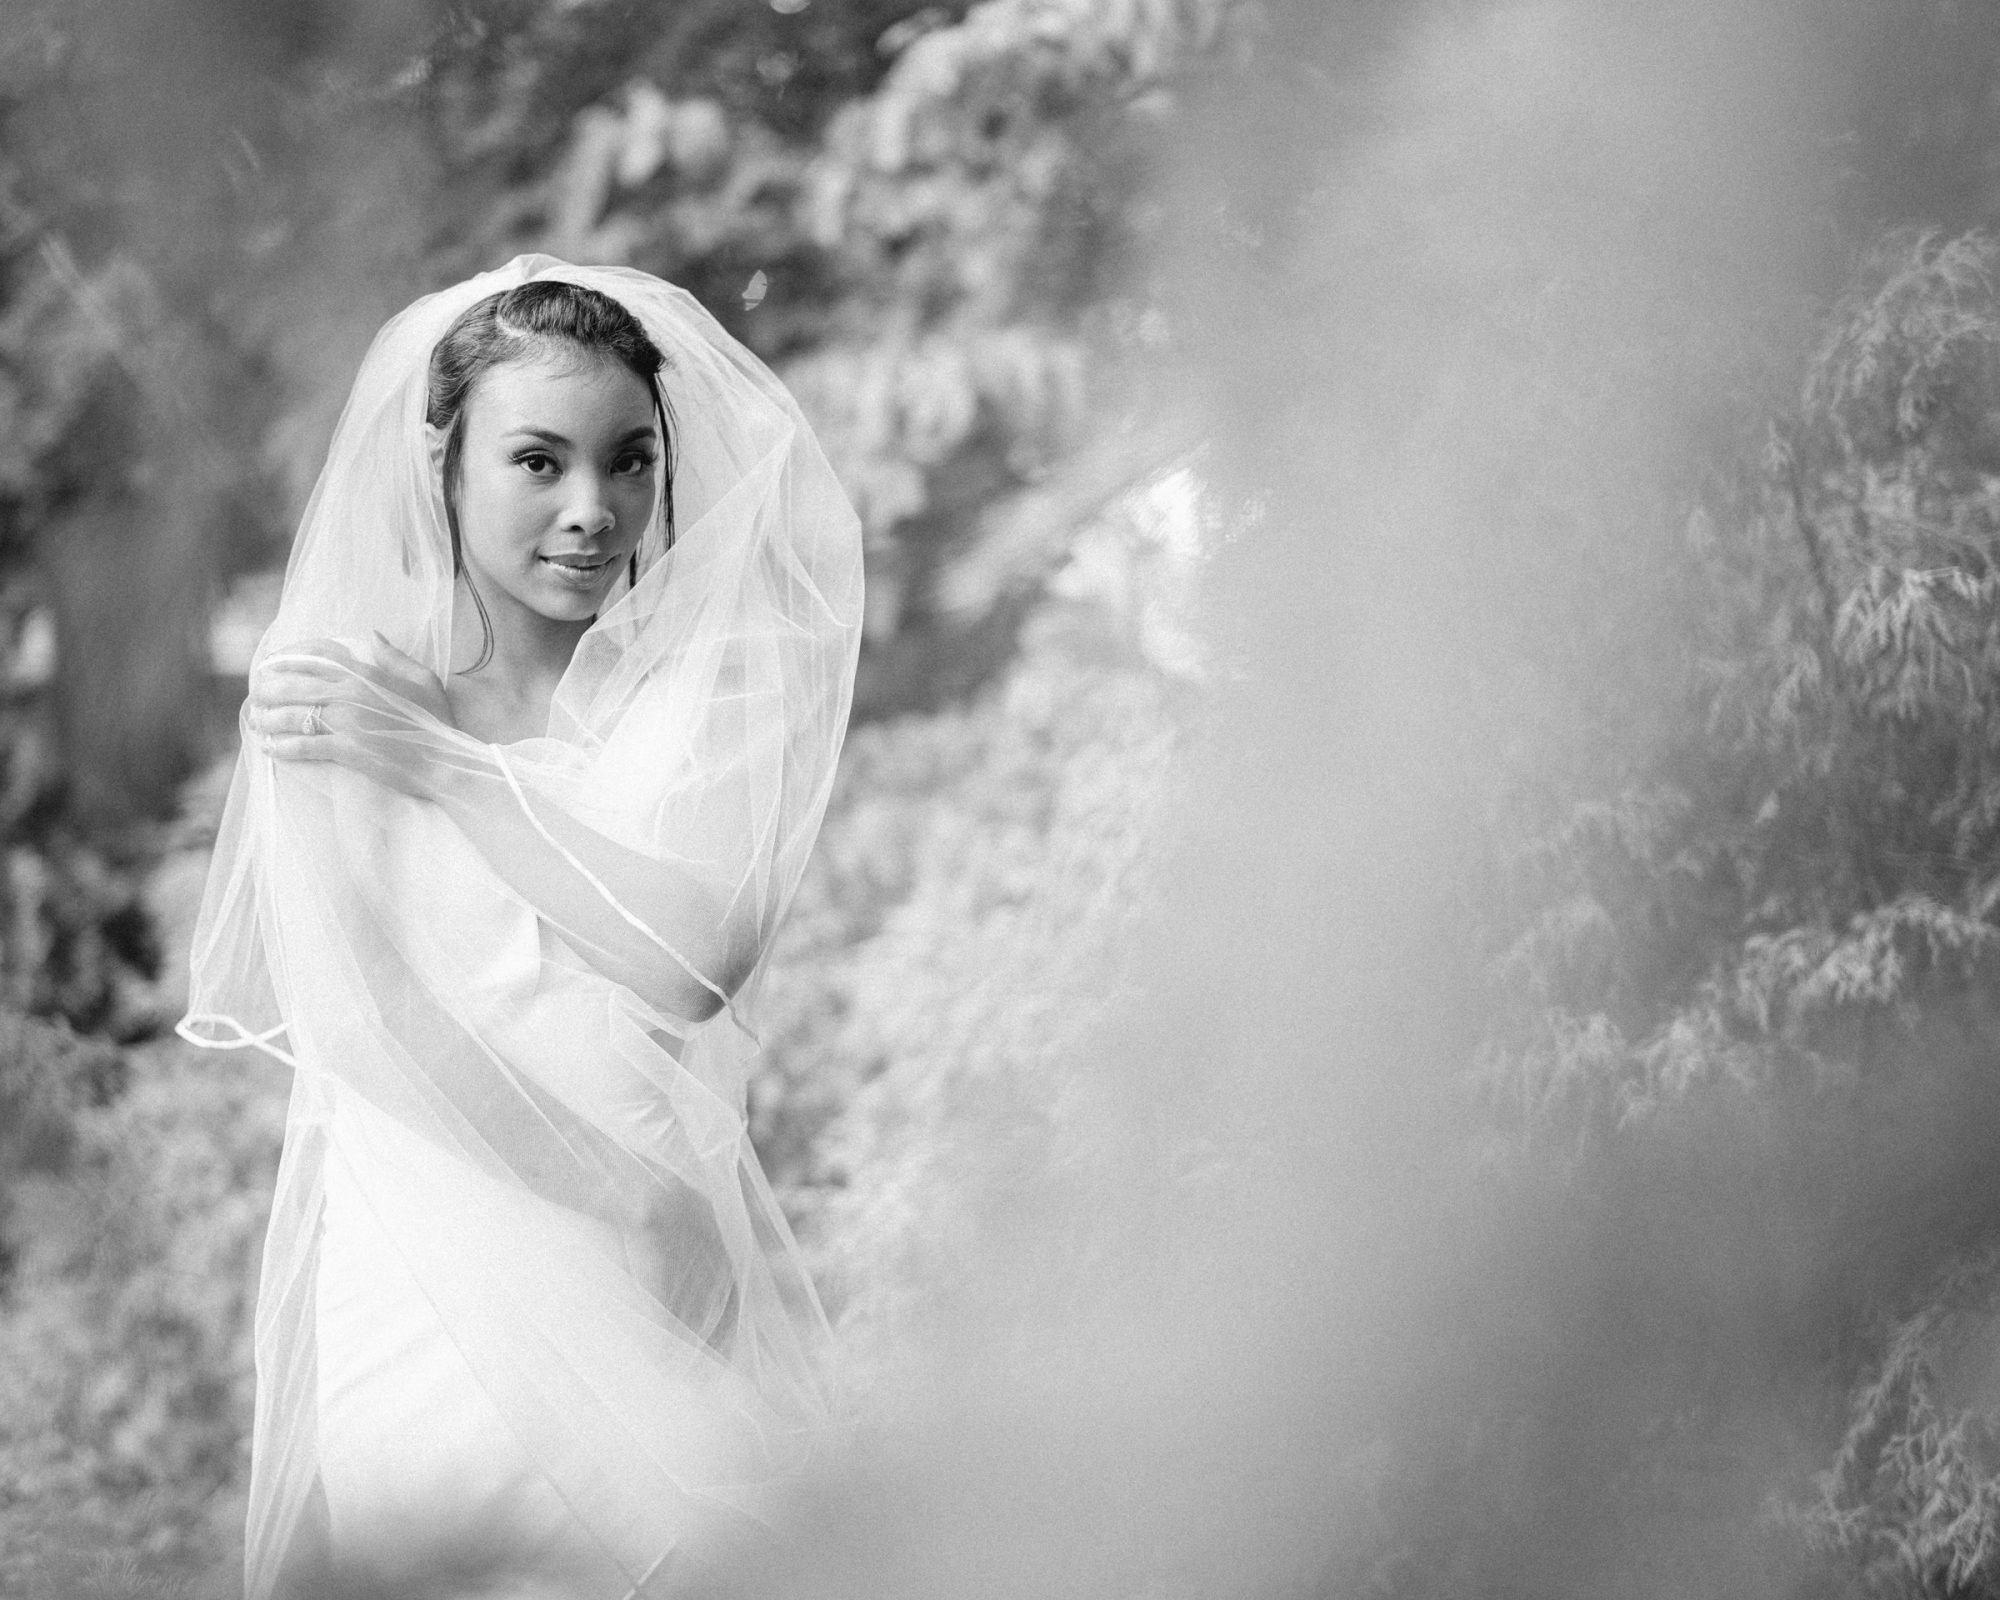 umstead weddings - kayla's bridal session